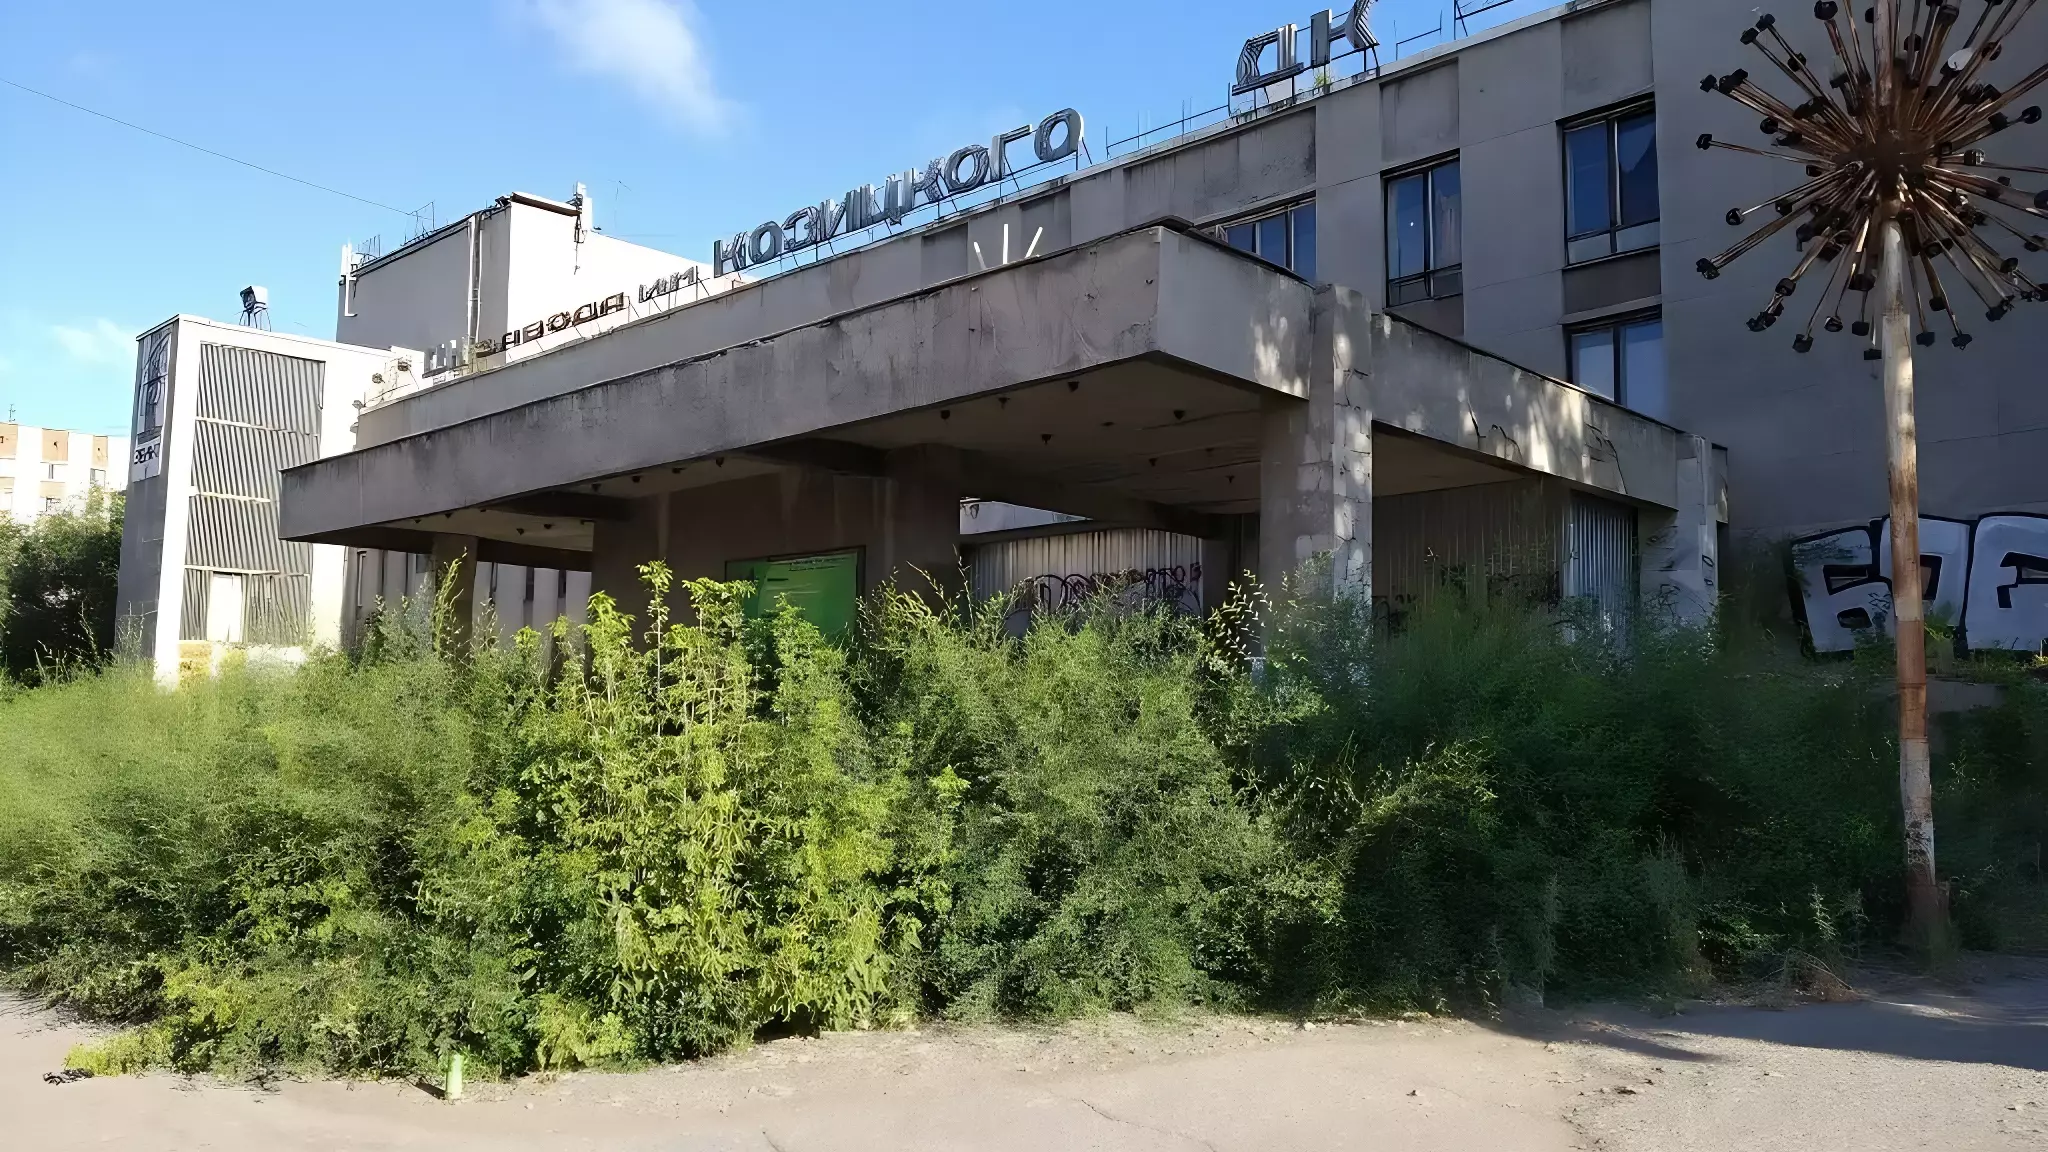 Заброшенный омский дворец культуры имени Козицкого хотят продать за 80 миллионов